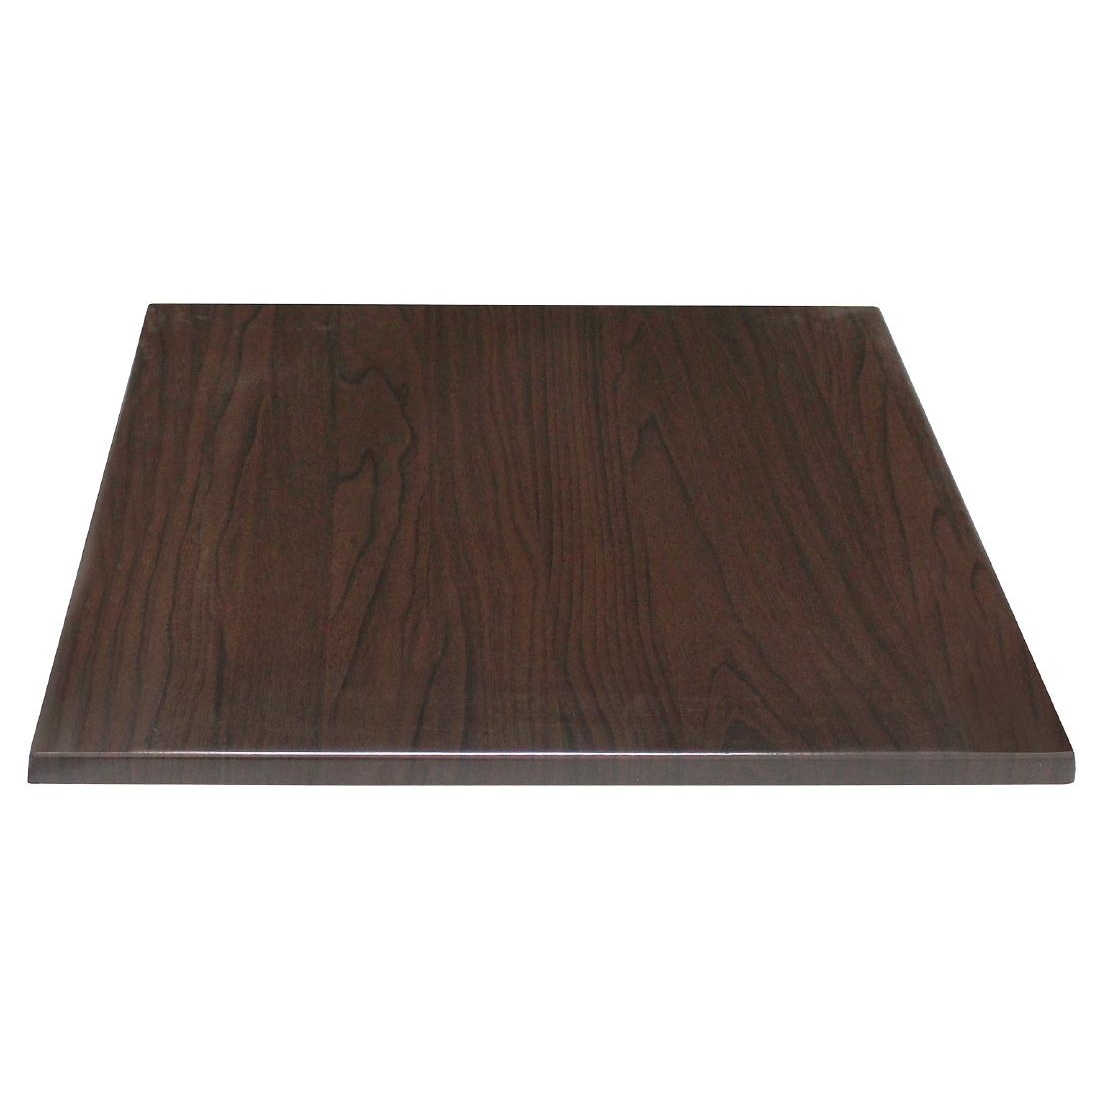 Bolero Pre-drilled Square Table Top Dark Brown 600mm